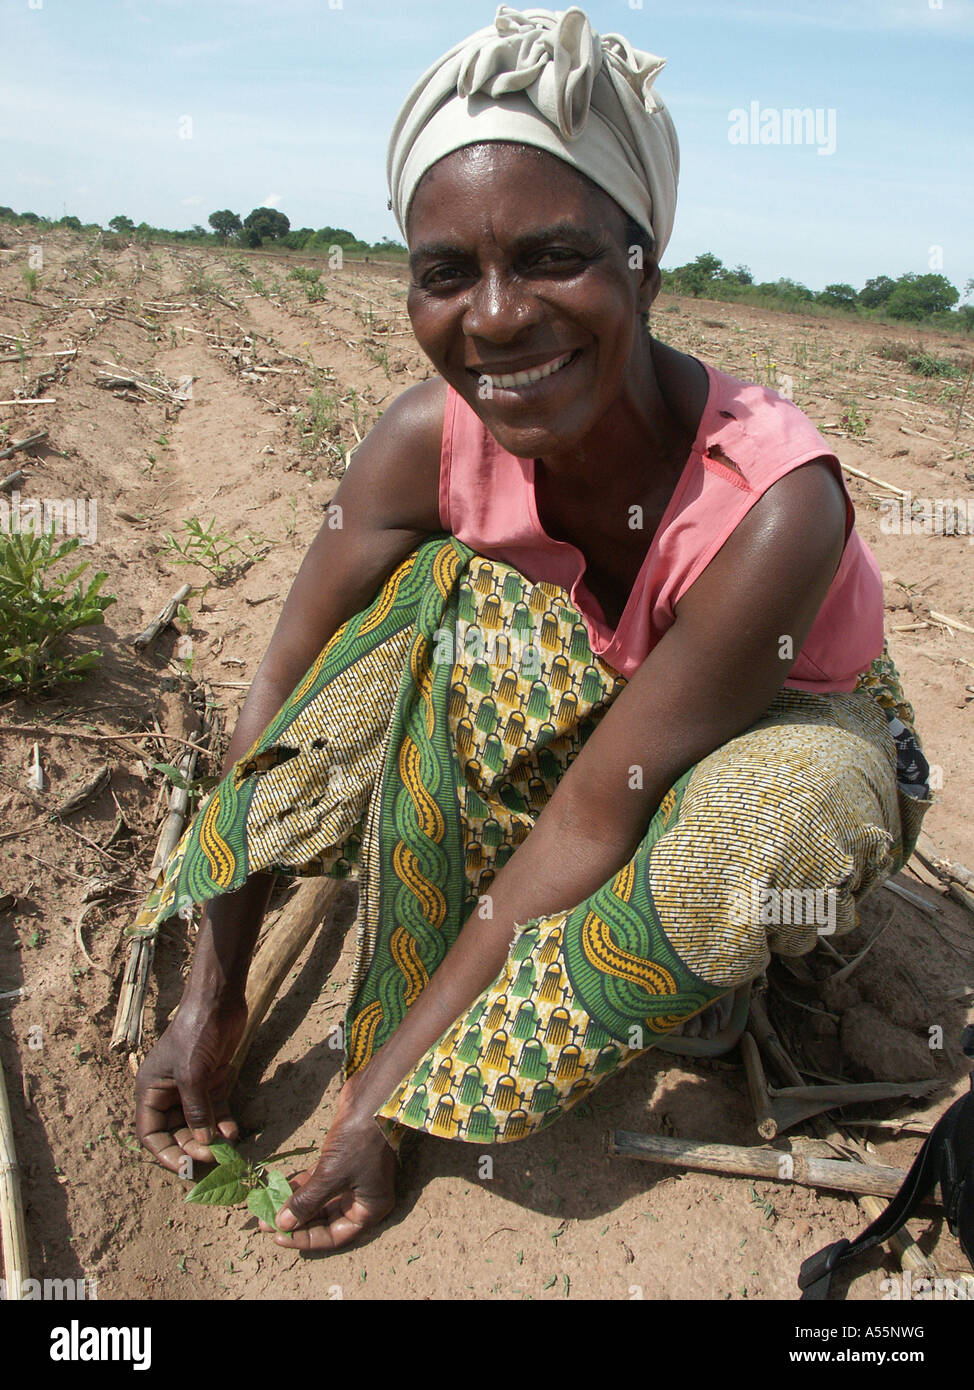 Painet1614 est agricultrice en Zambie des semis de haricots de velours vert pays lusaka économiquement moins développés Pays en développement Banque D'Images